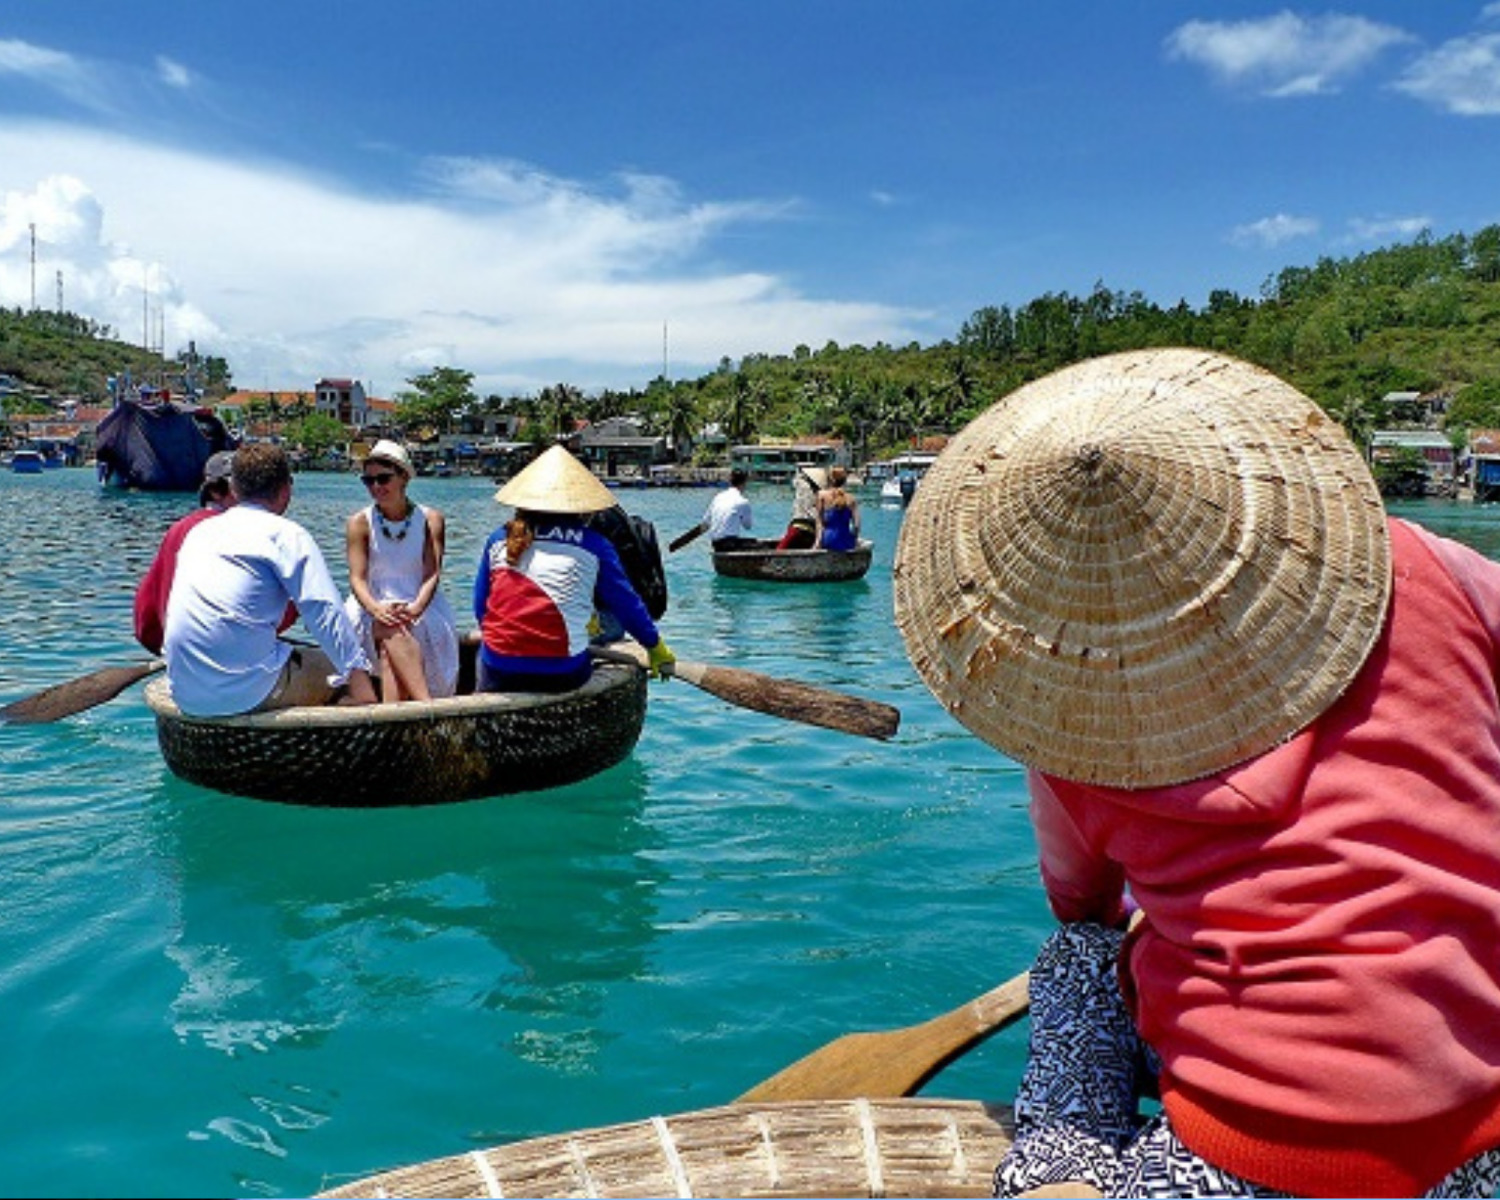 Đầm Bấy Nha Trang - Mê mẩn trước vịnh biển đẹp tựa như tranh 9